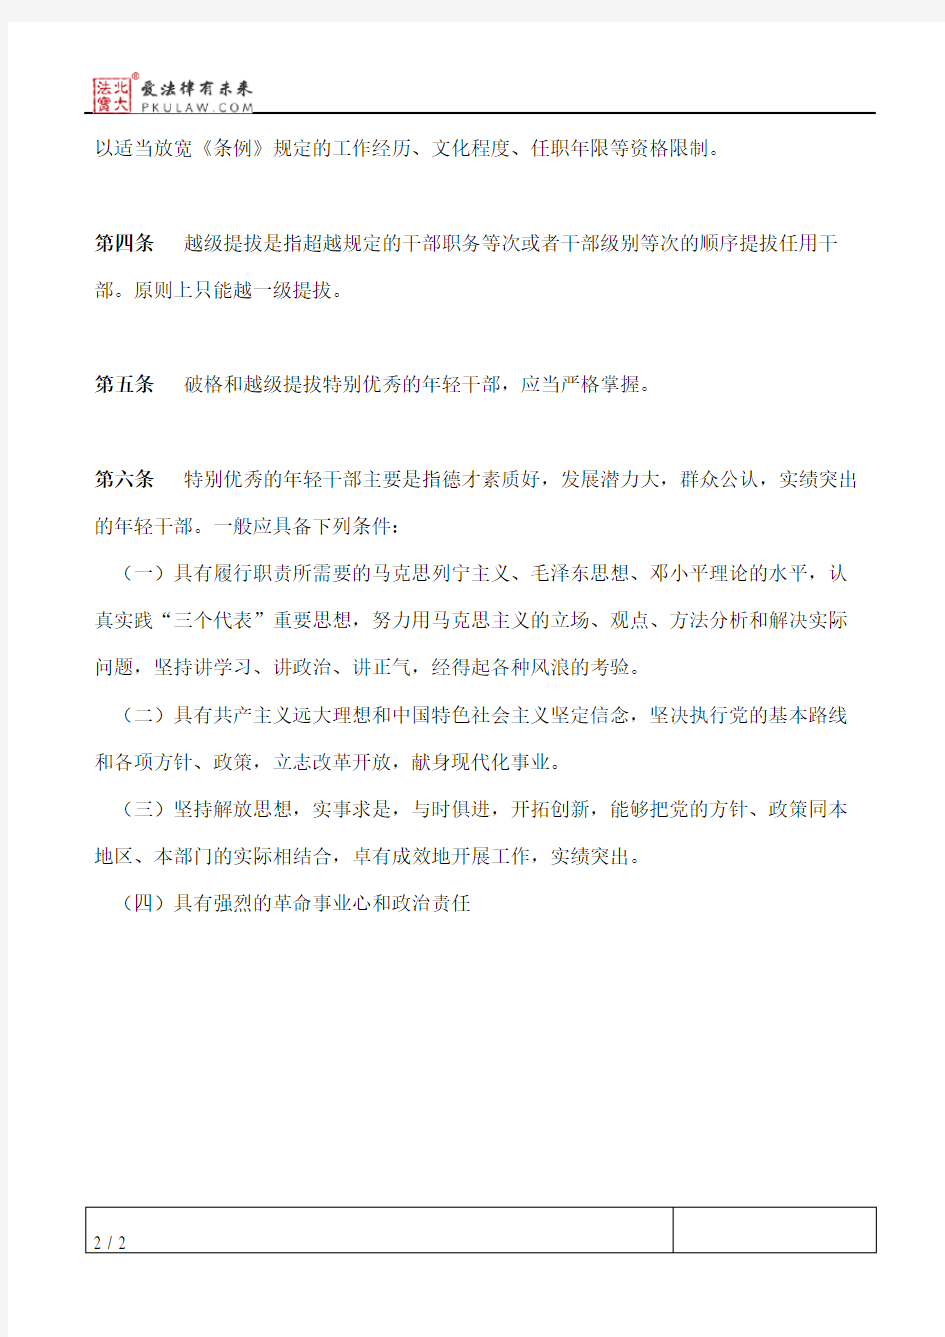 云南省党政领导干部破格、越级提拔任用办法(试行)